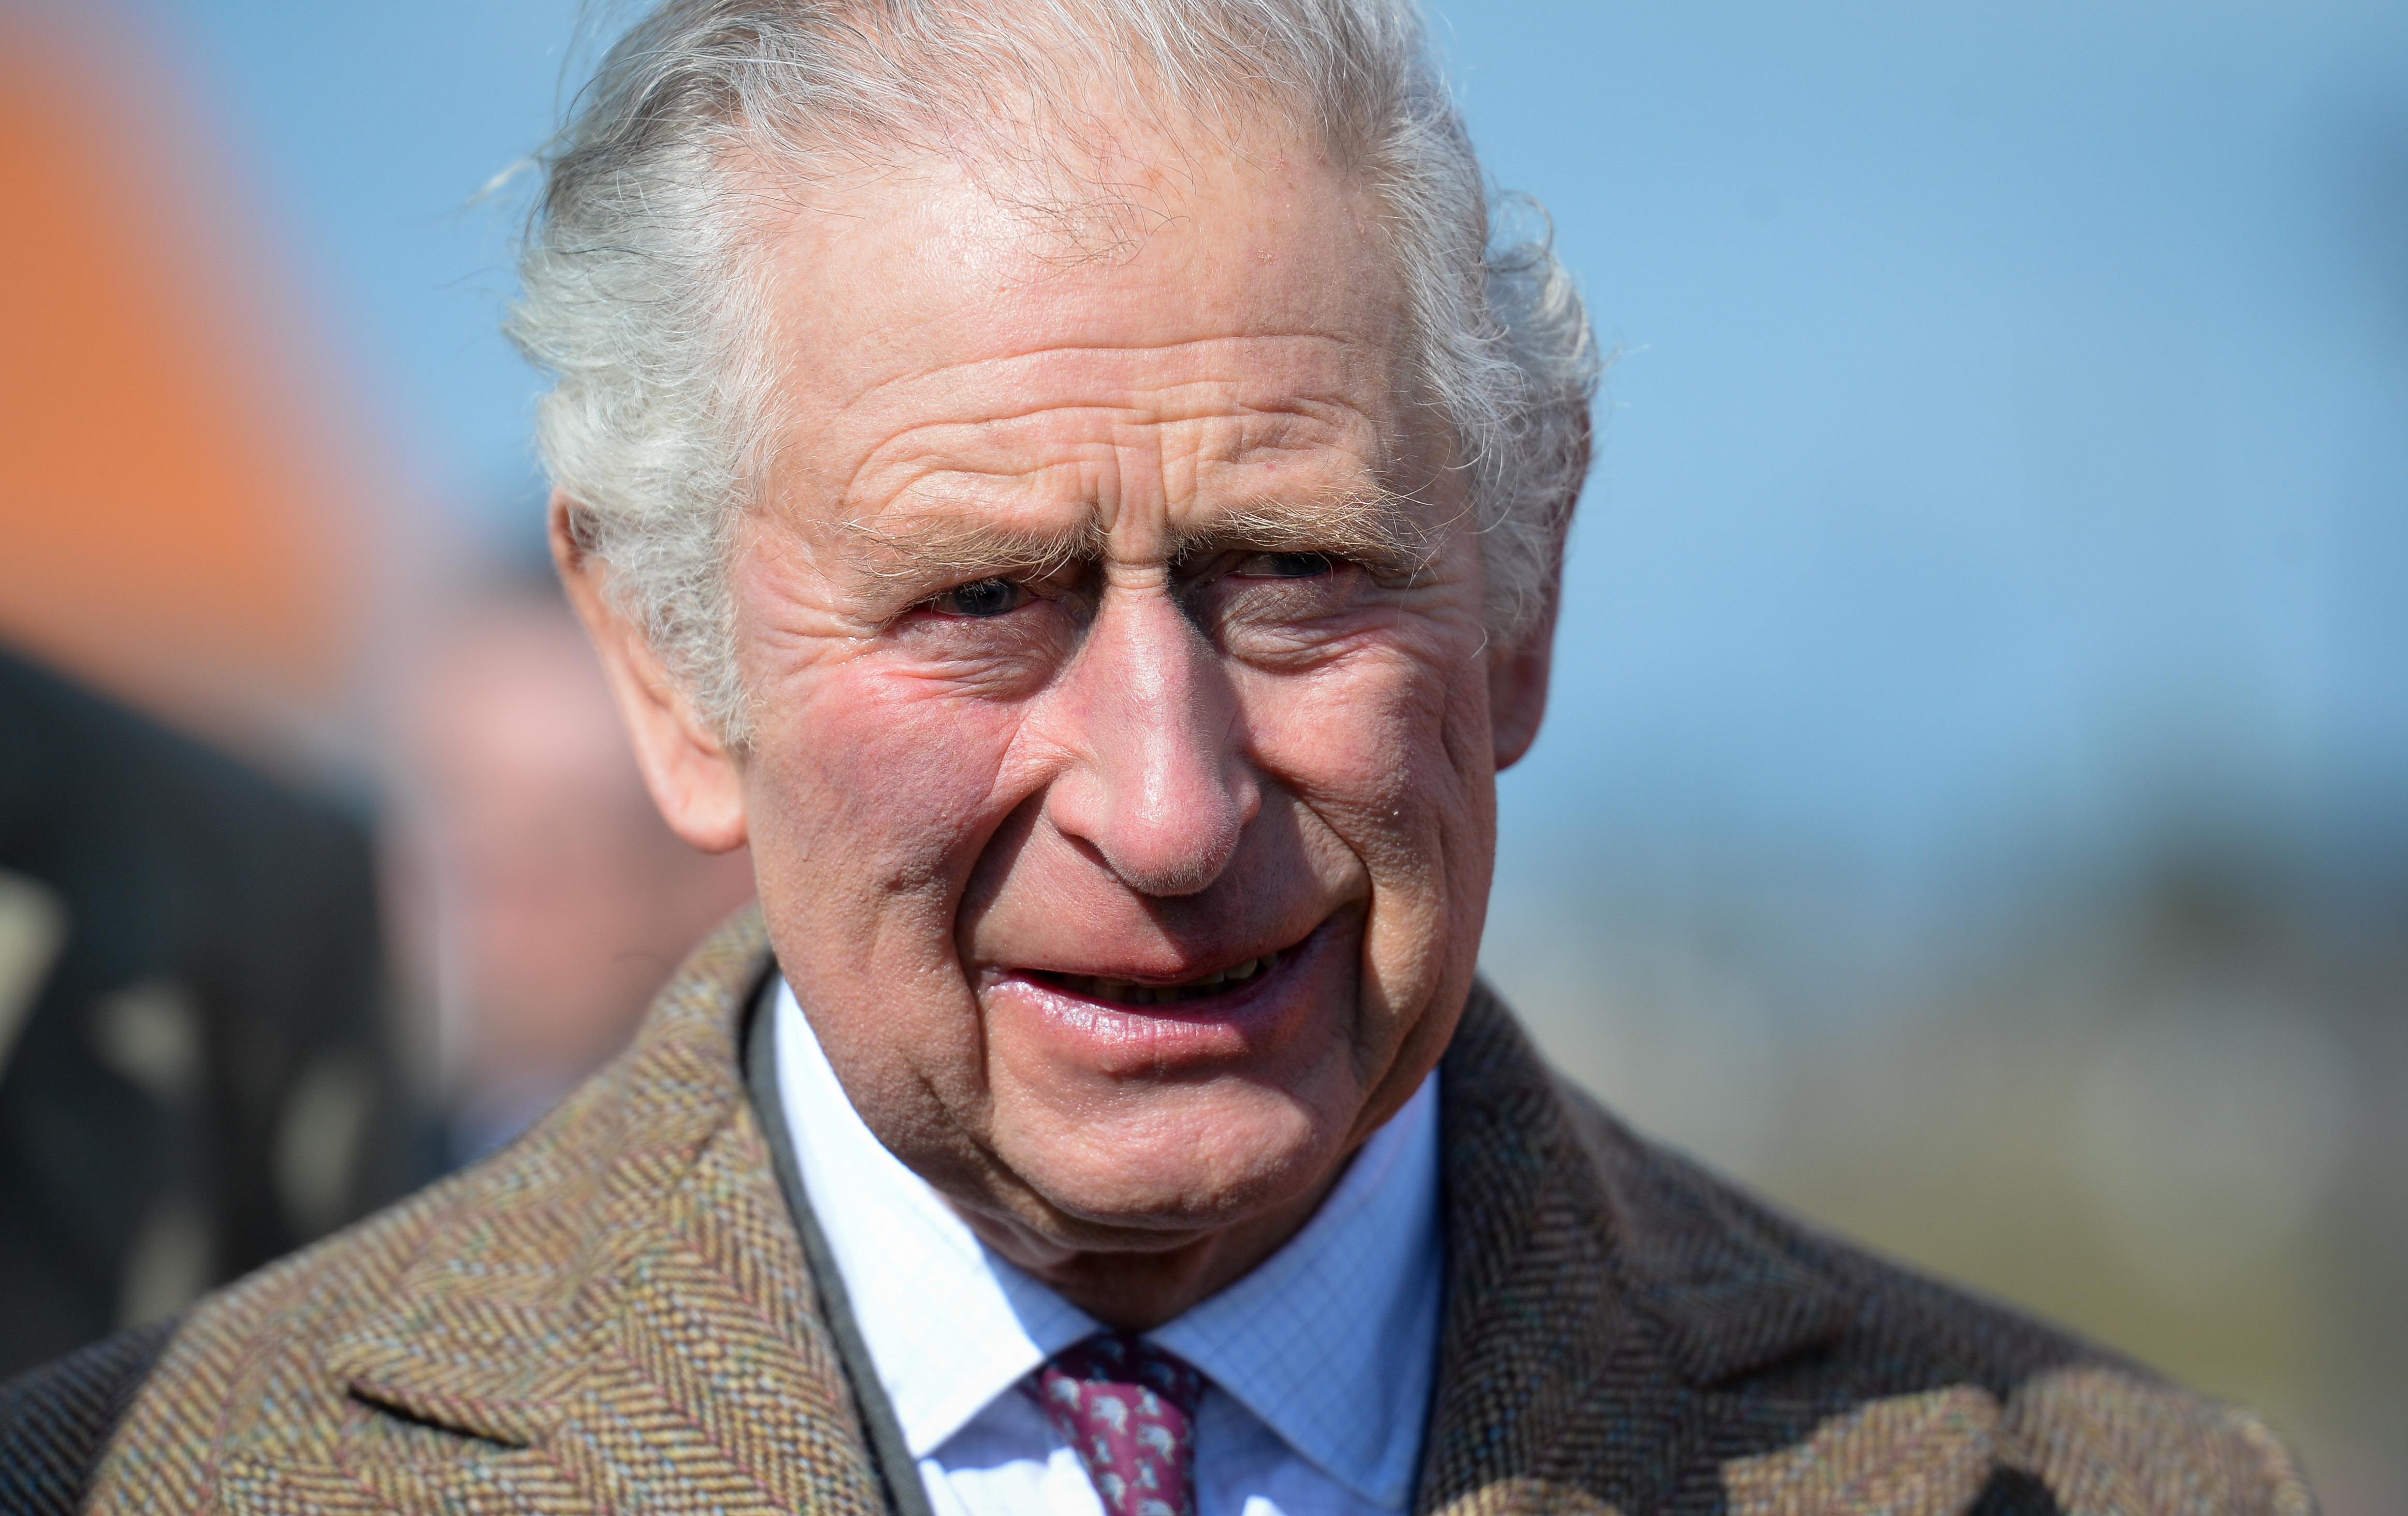 El rey Charles III durante su visita al Bosque del Centenario de la Real Legión Británica el 07 de marzo de 2022 en Newquay, Inglaterra | Fuente: Getty Images